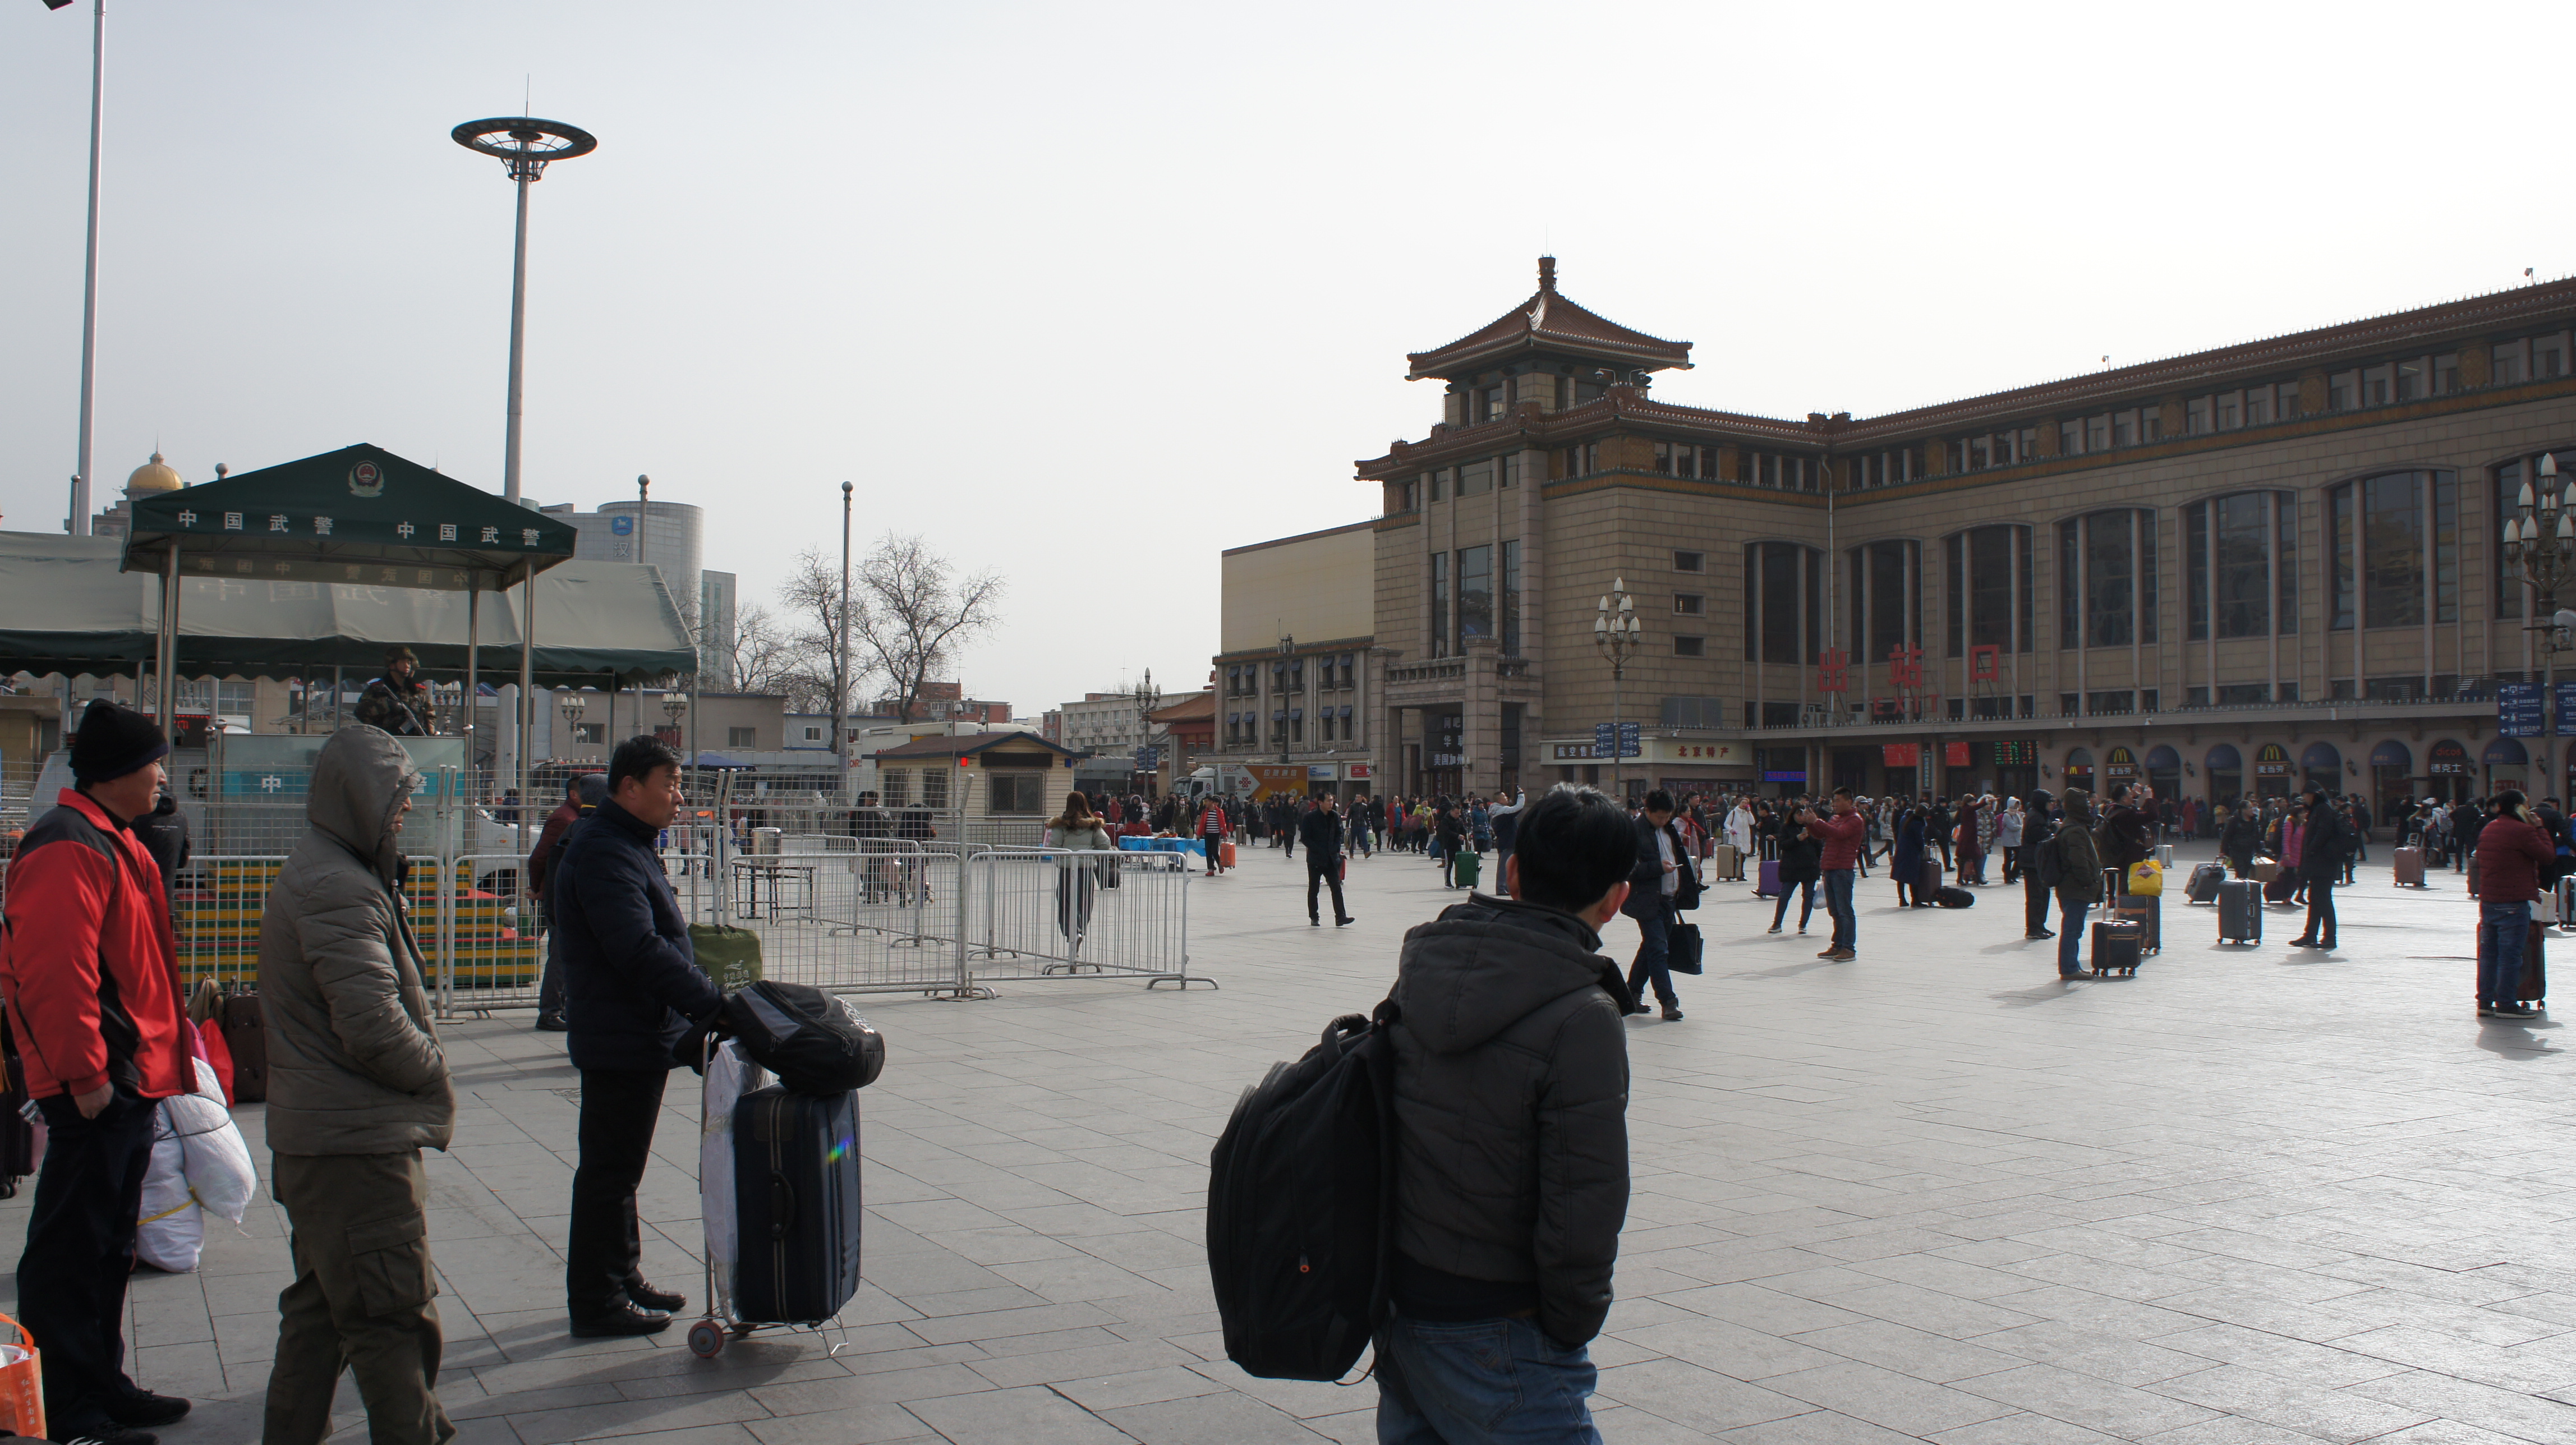 무장군인이 지켜보는 가운데 중국인들이 베이징 기차역에서 귀성길에 오르고 있다.